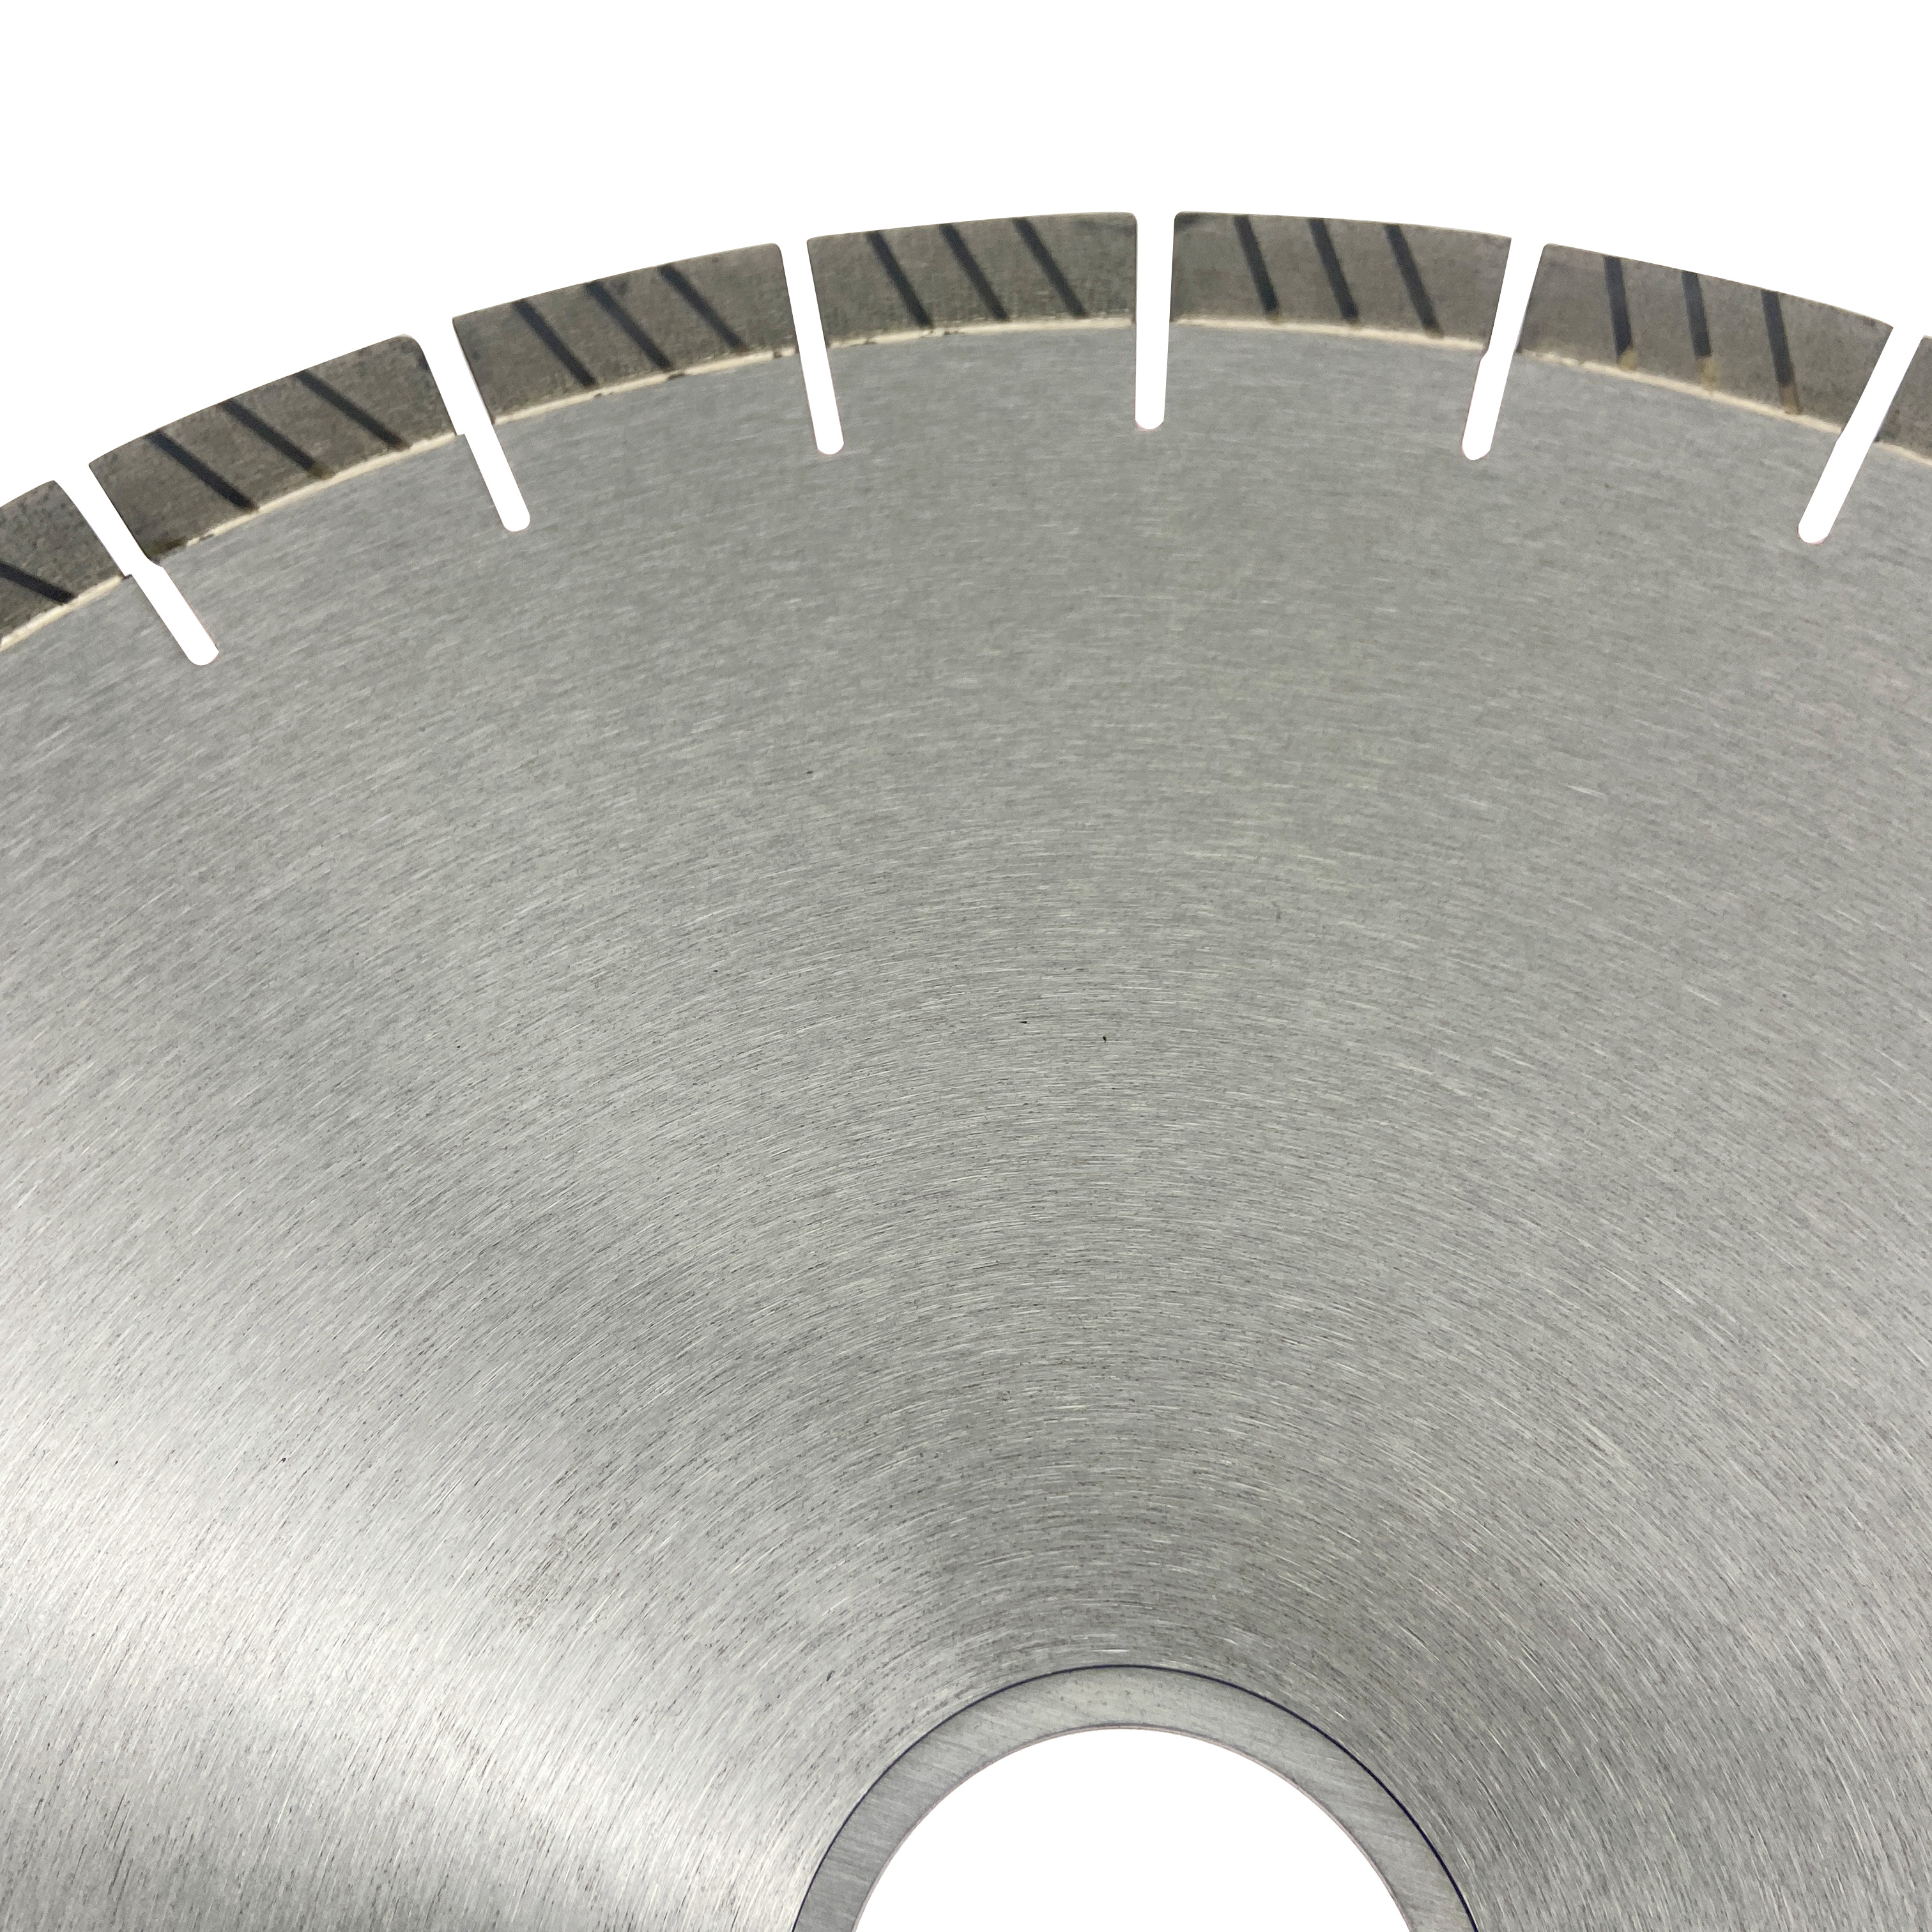 14 дюймов 350*20*60/50 мм серебряные паяные сегменты arix турбо бесшумный стальной сердечник инструменты алмазный дисковый пильный диск для резки твердого гранита